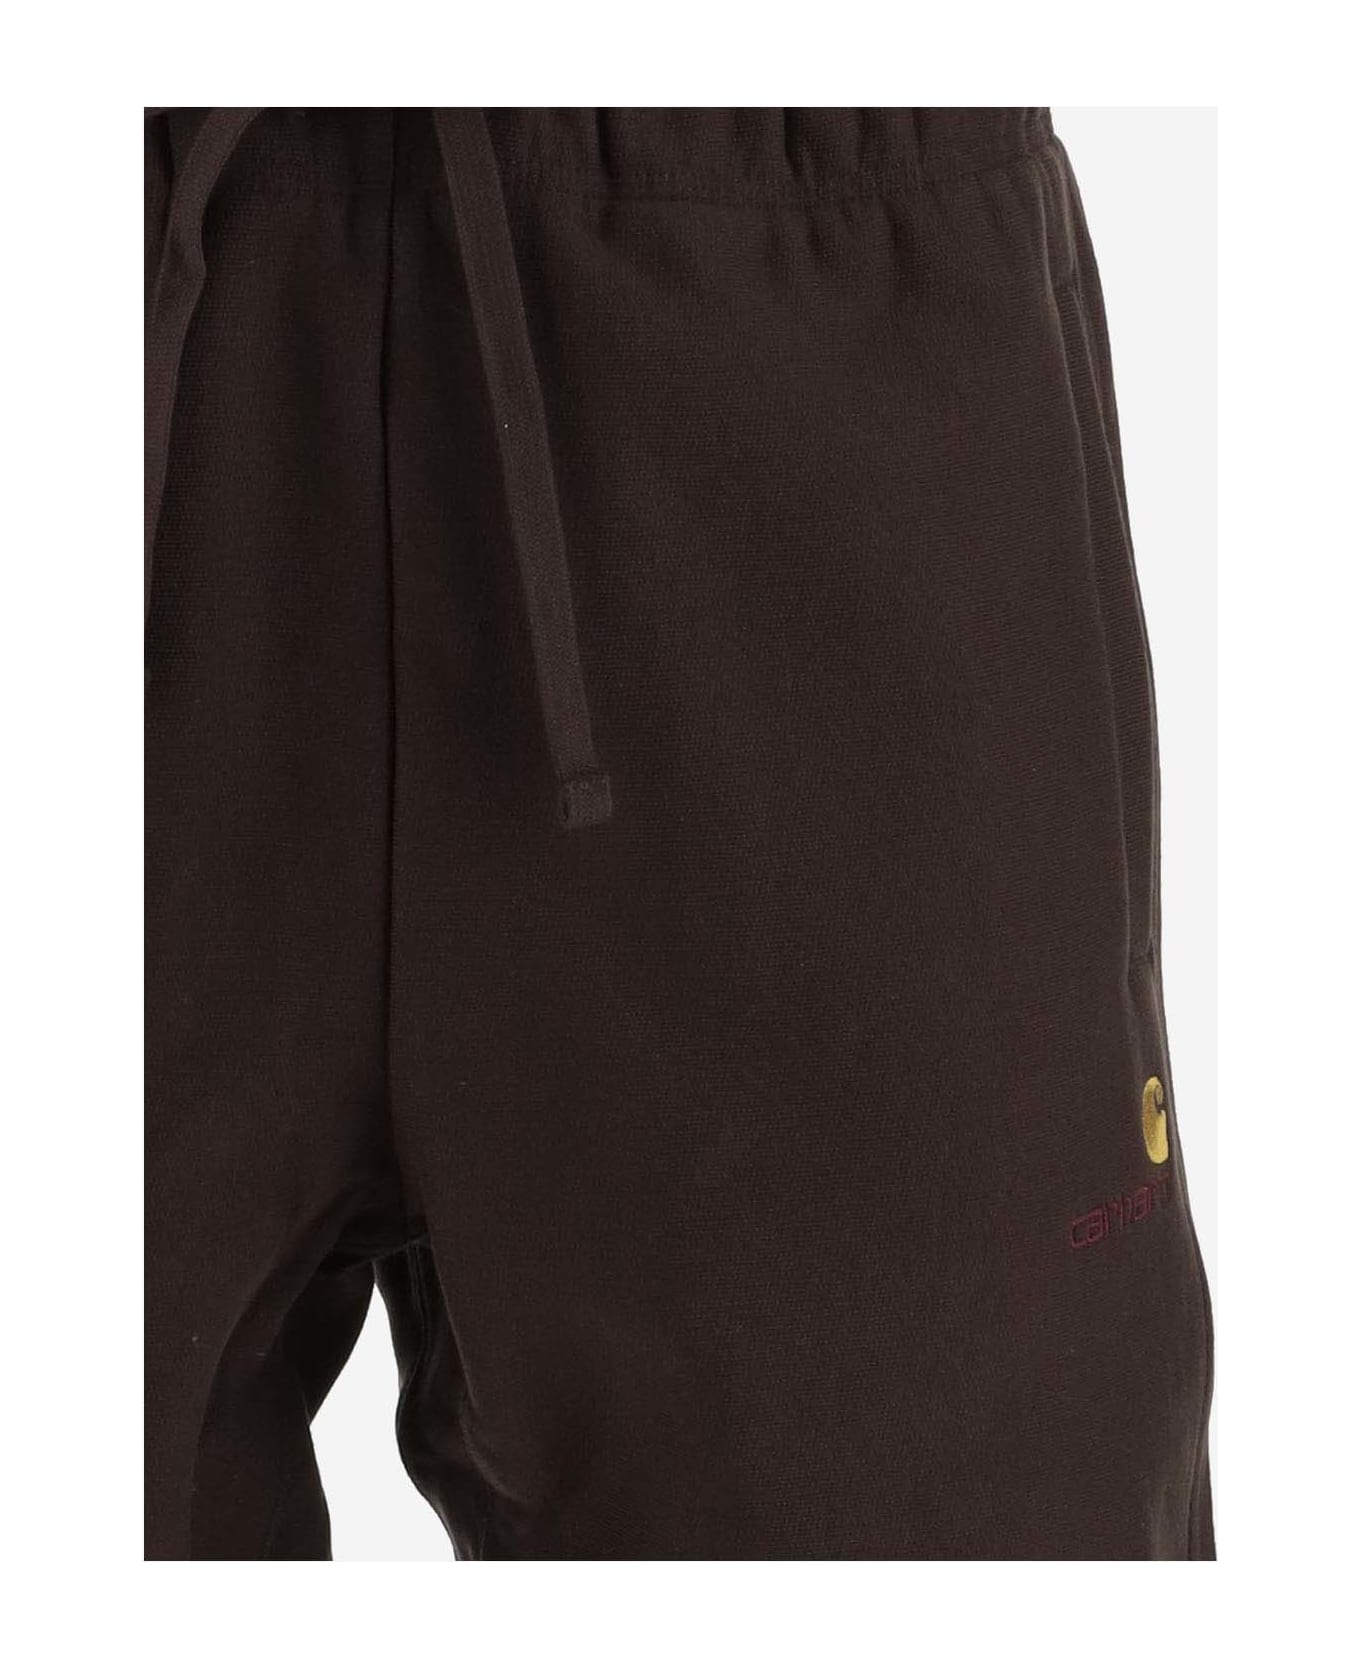 Carhartt Cotton Blend Logo Shorts - Brown